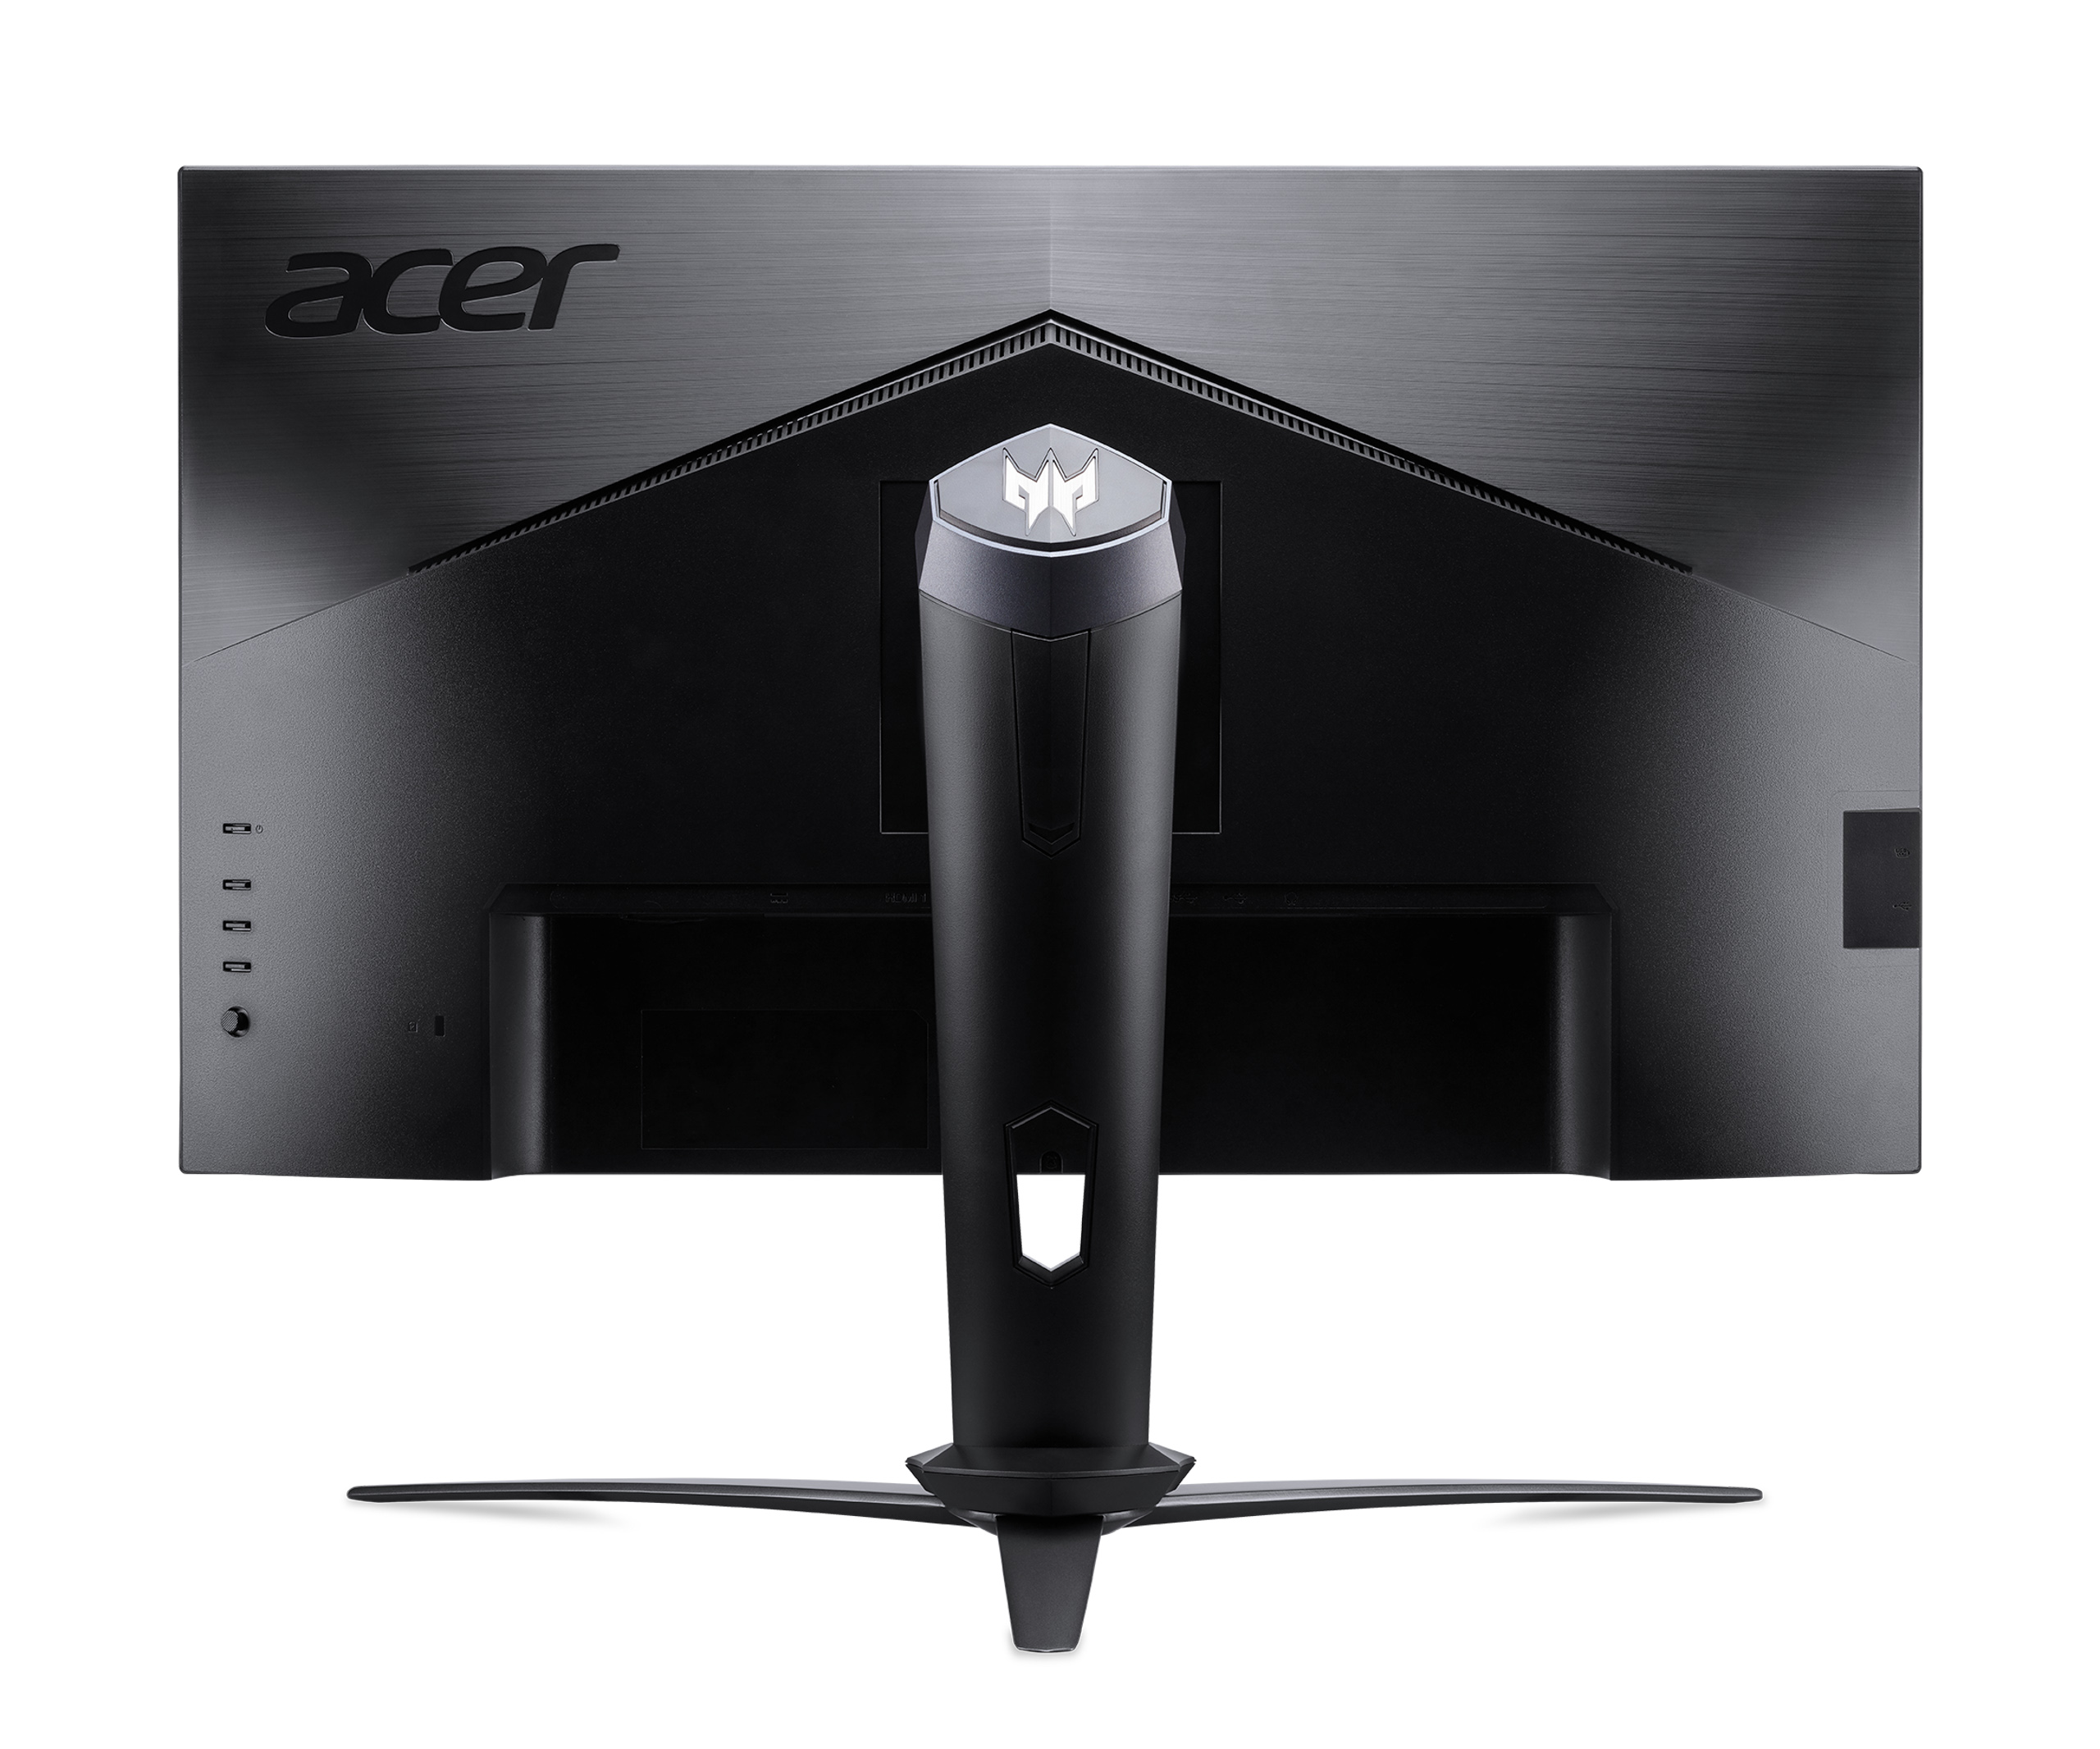 Acer giới thiệu màn hình Predator X28 dành cho game thủ hardcore, giá 59.99 triệu đồng